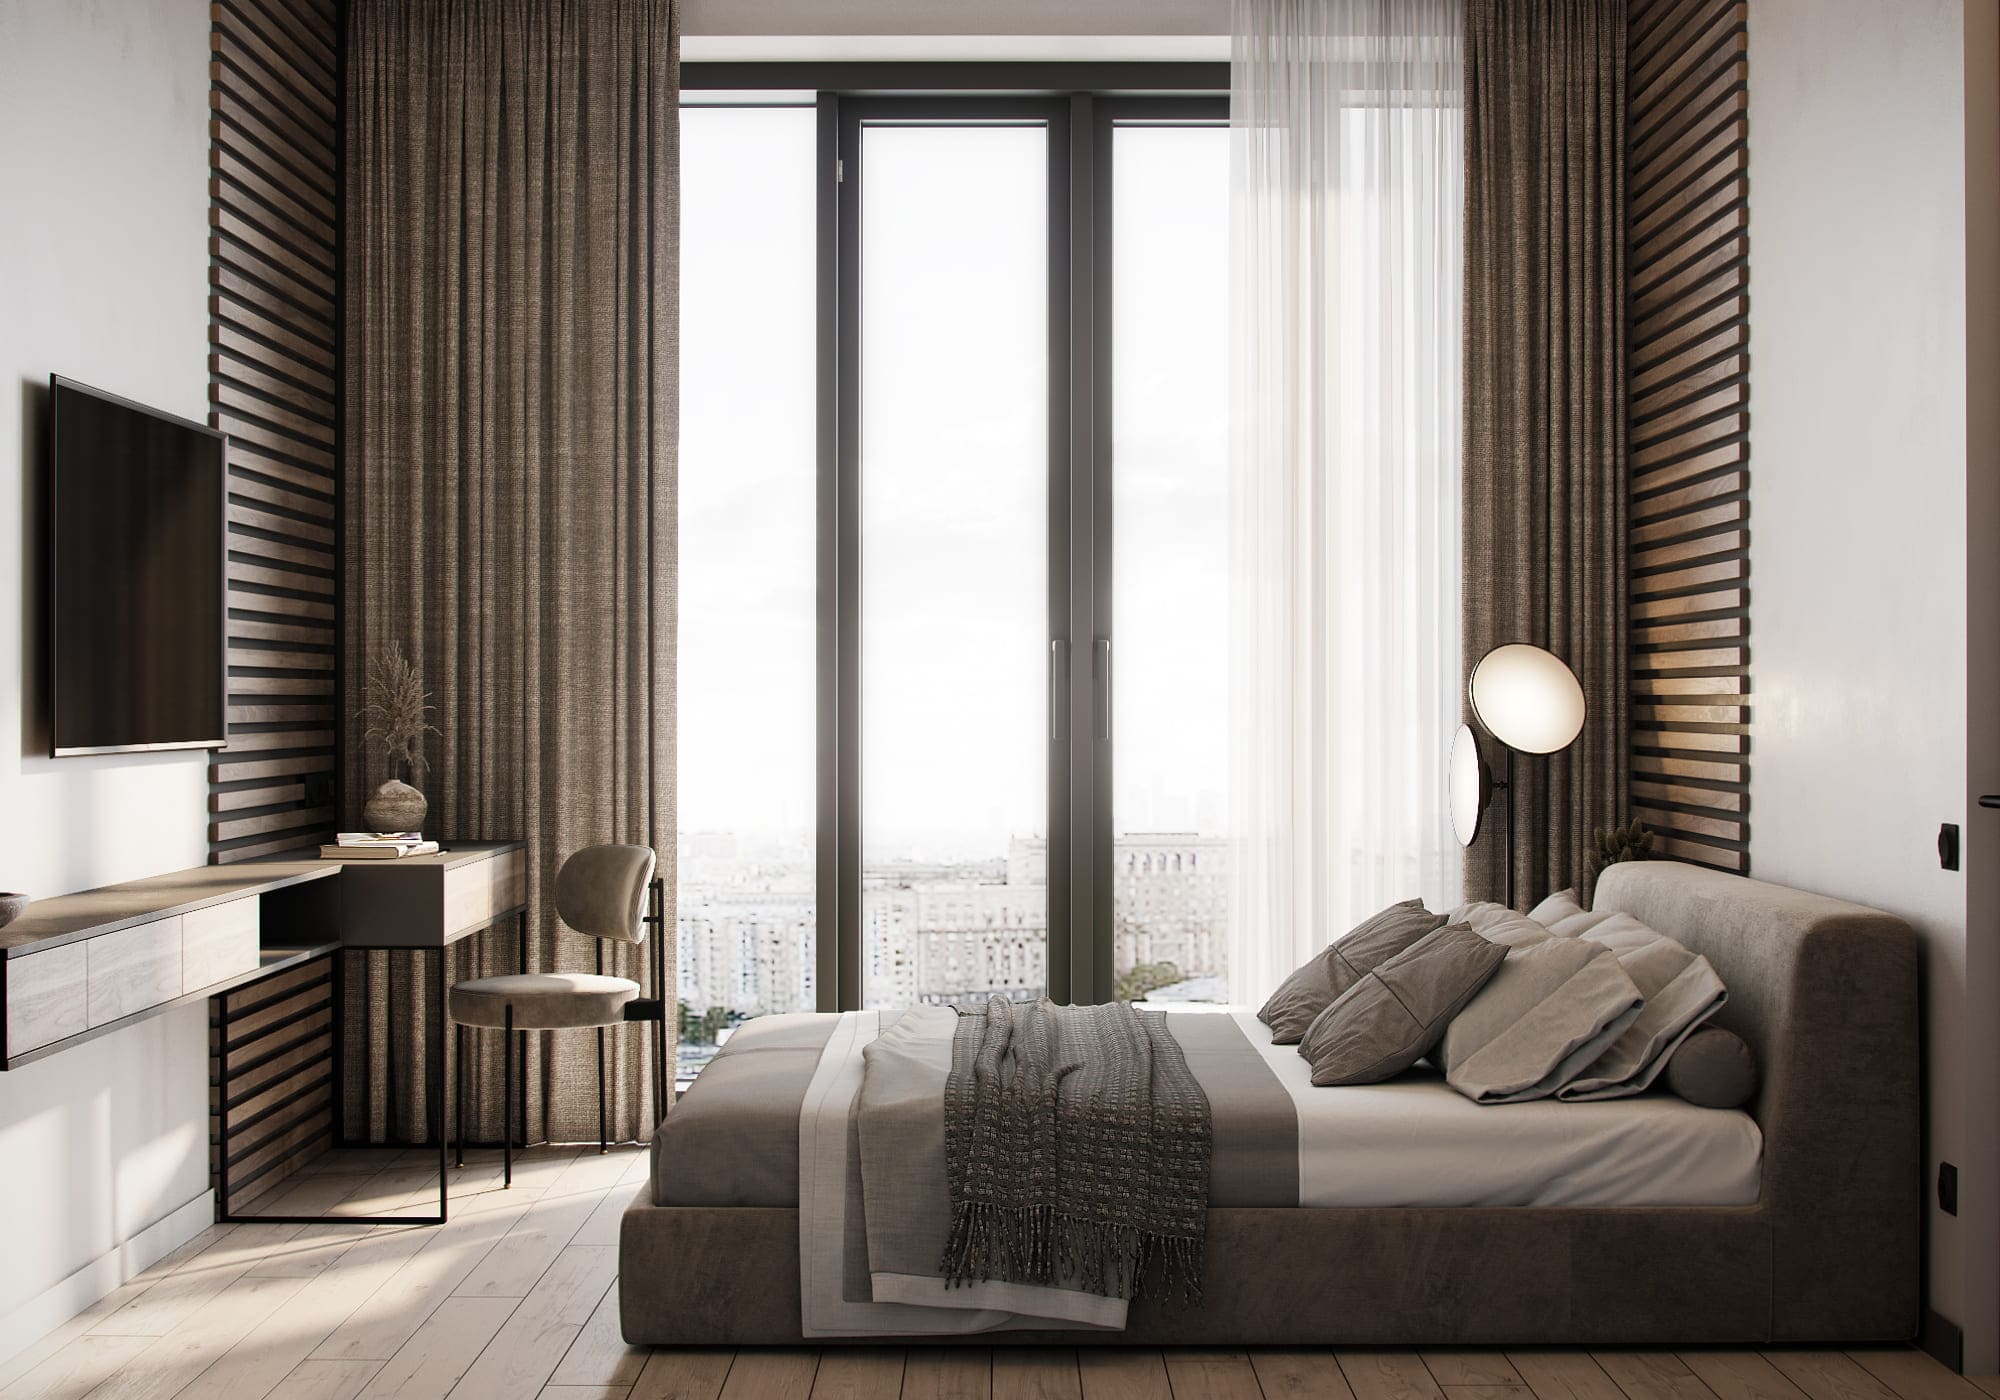 Стильная квартира в светлых тонах с панорамным видом, спальня, фото 41